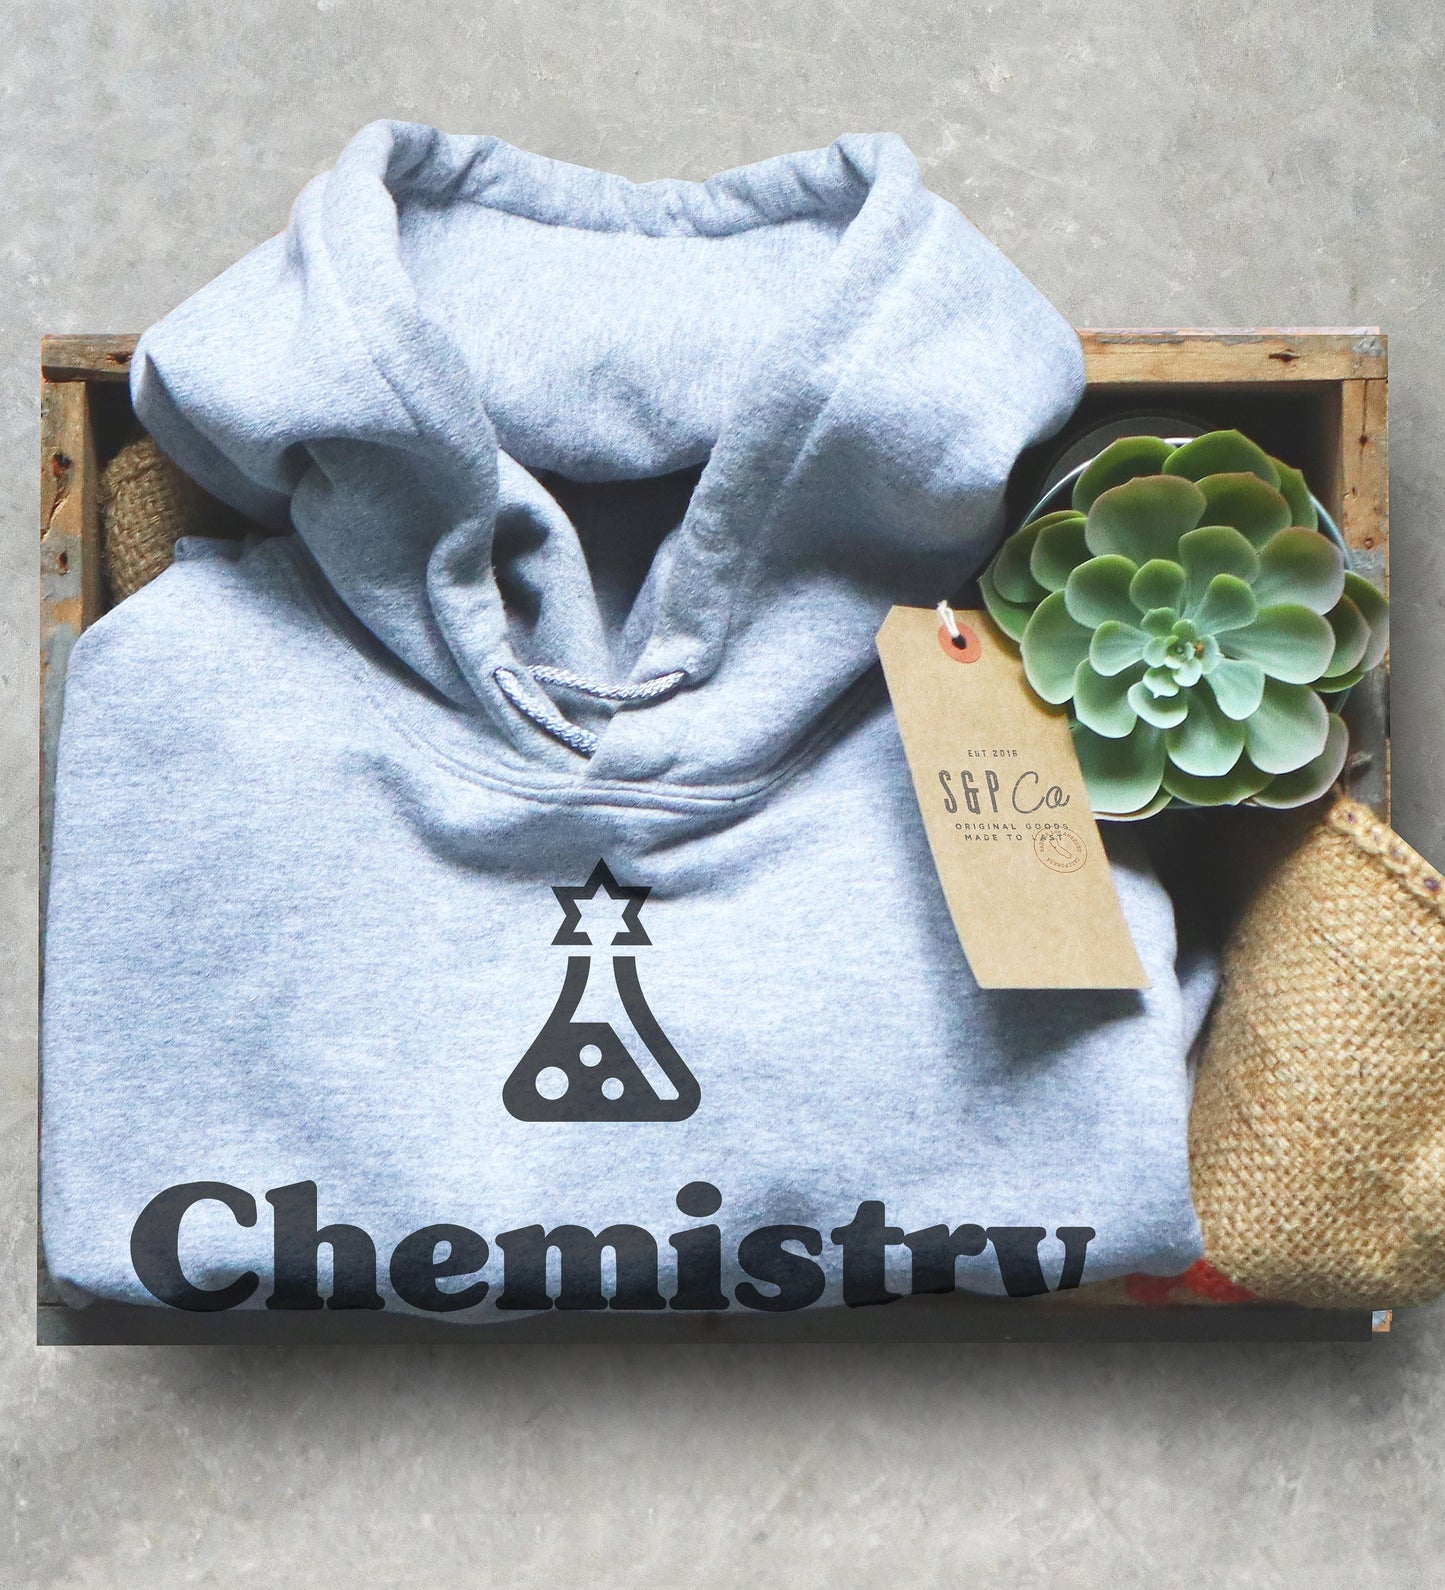 Chemistry Is Like Cooking Hoodie - Chemistry shirt, Science shirt, Chemistry gift, Chemistry teacher, Chemist gift, Funny chemistry hoodie